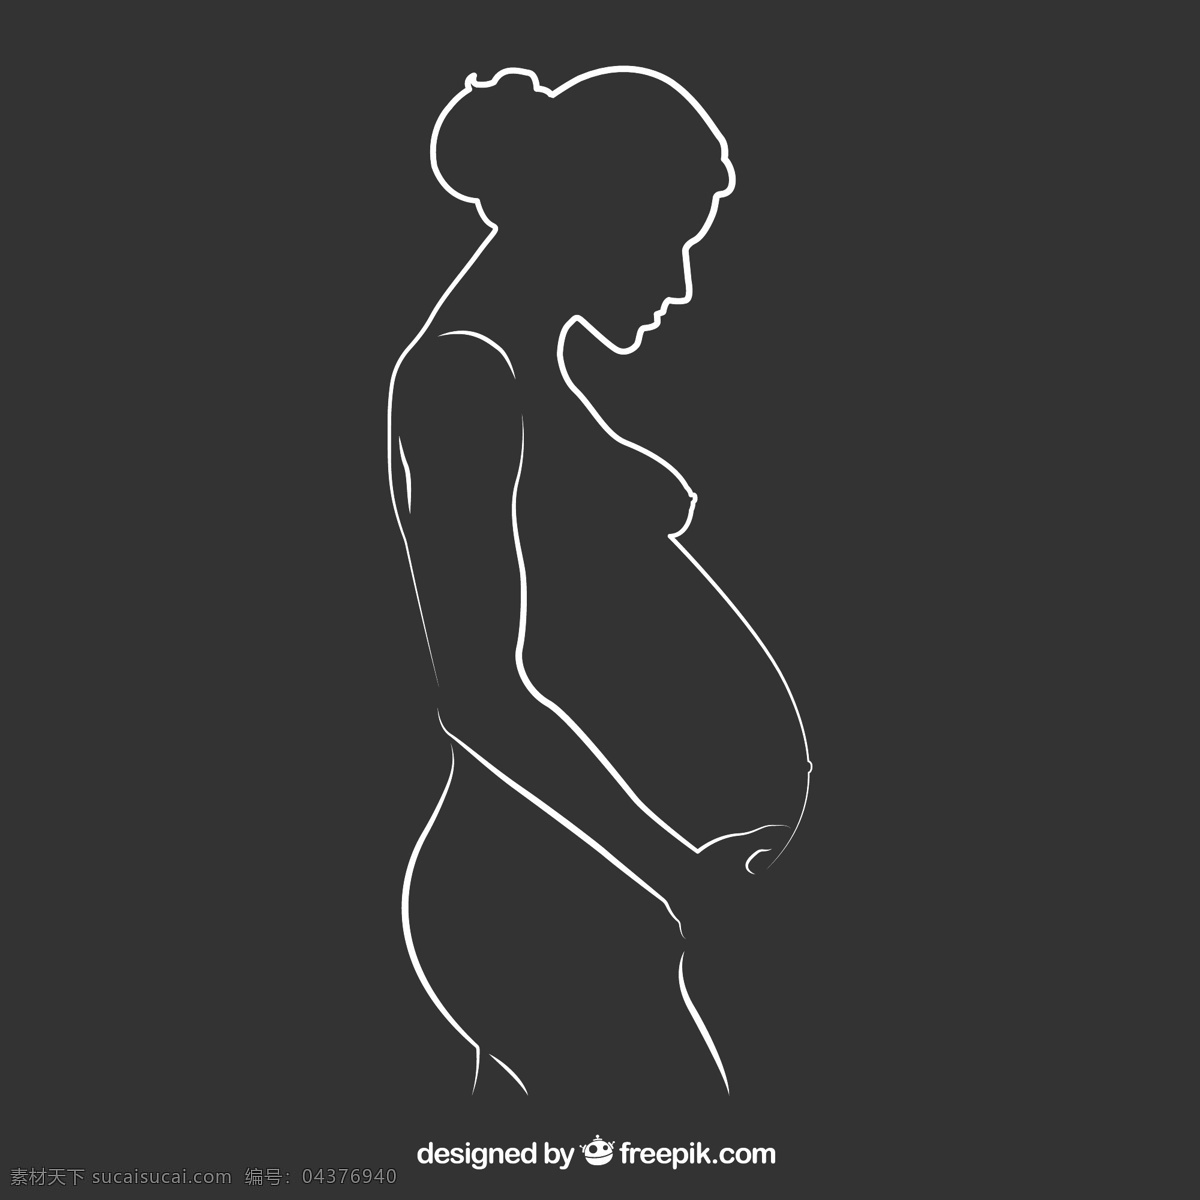 孕妇剪影图片 家庭 自然 妈妈 剪影 绘画 孕妇 女人 女性 绘图 怀孕 抽纱 妇女 手绘 生育 femeni 期待 图标 高清 源文件